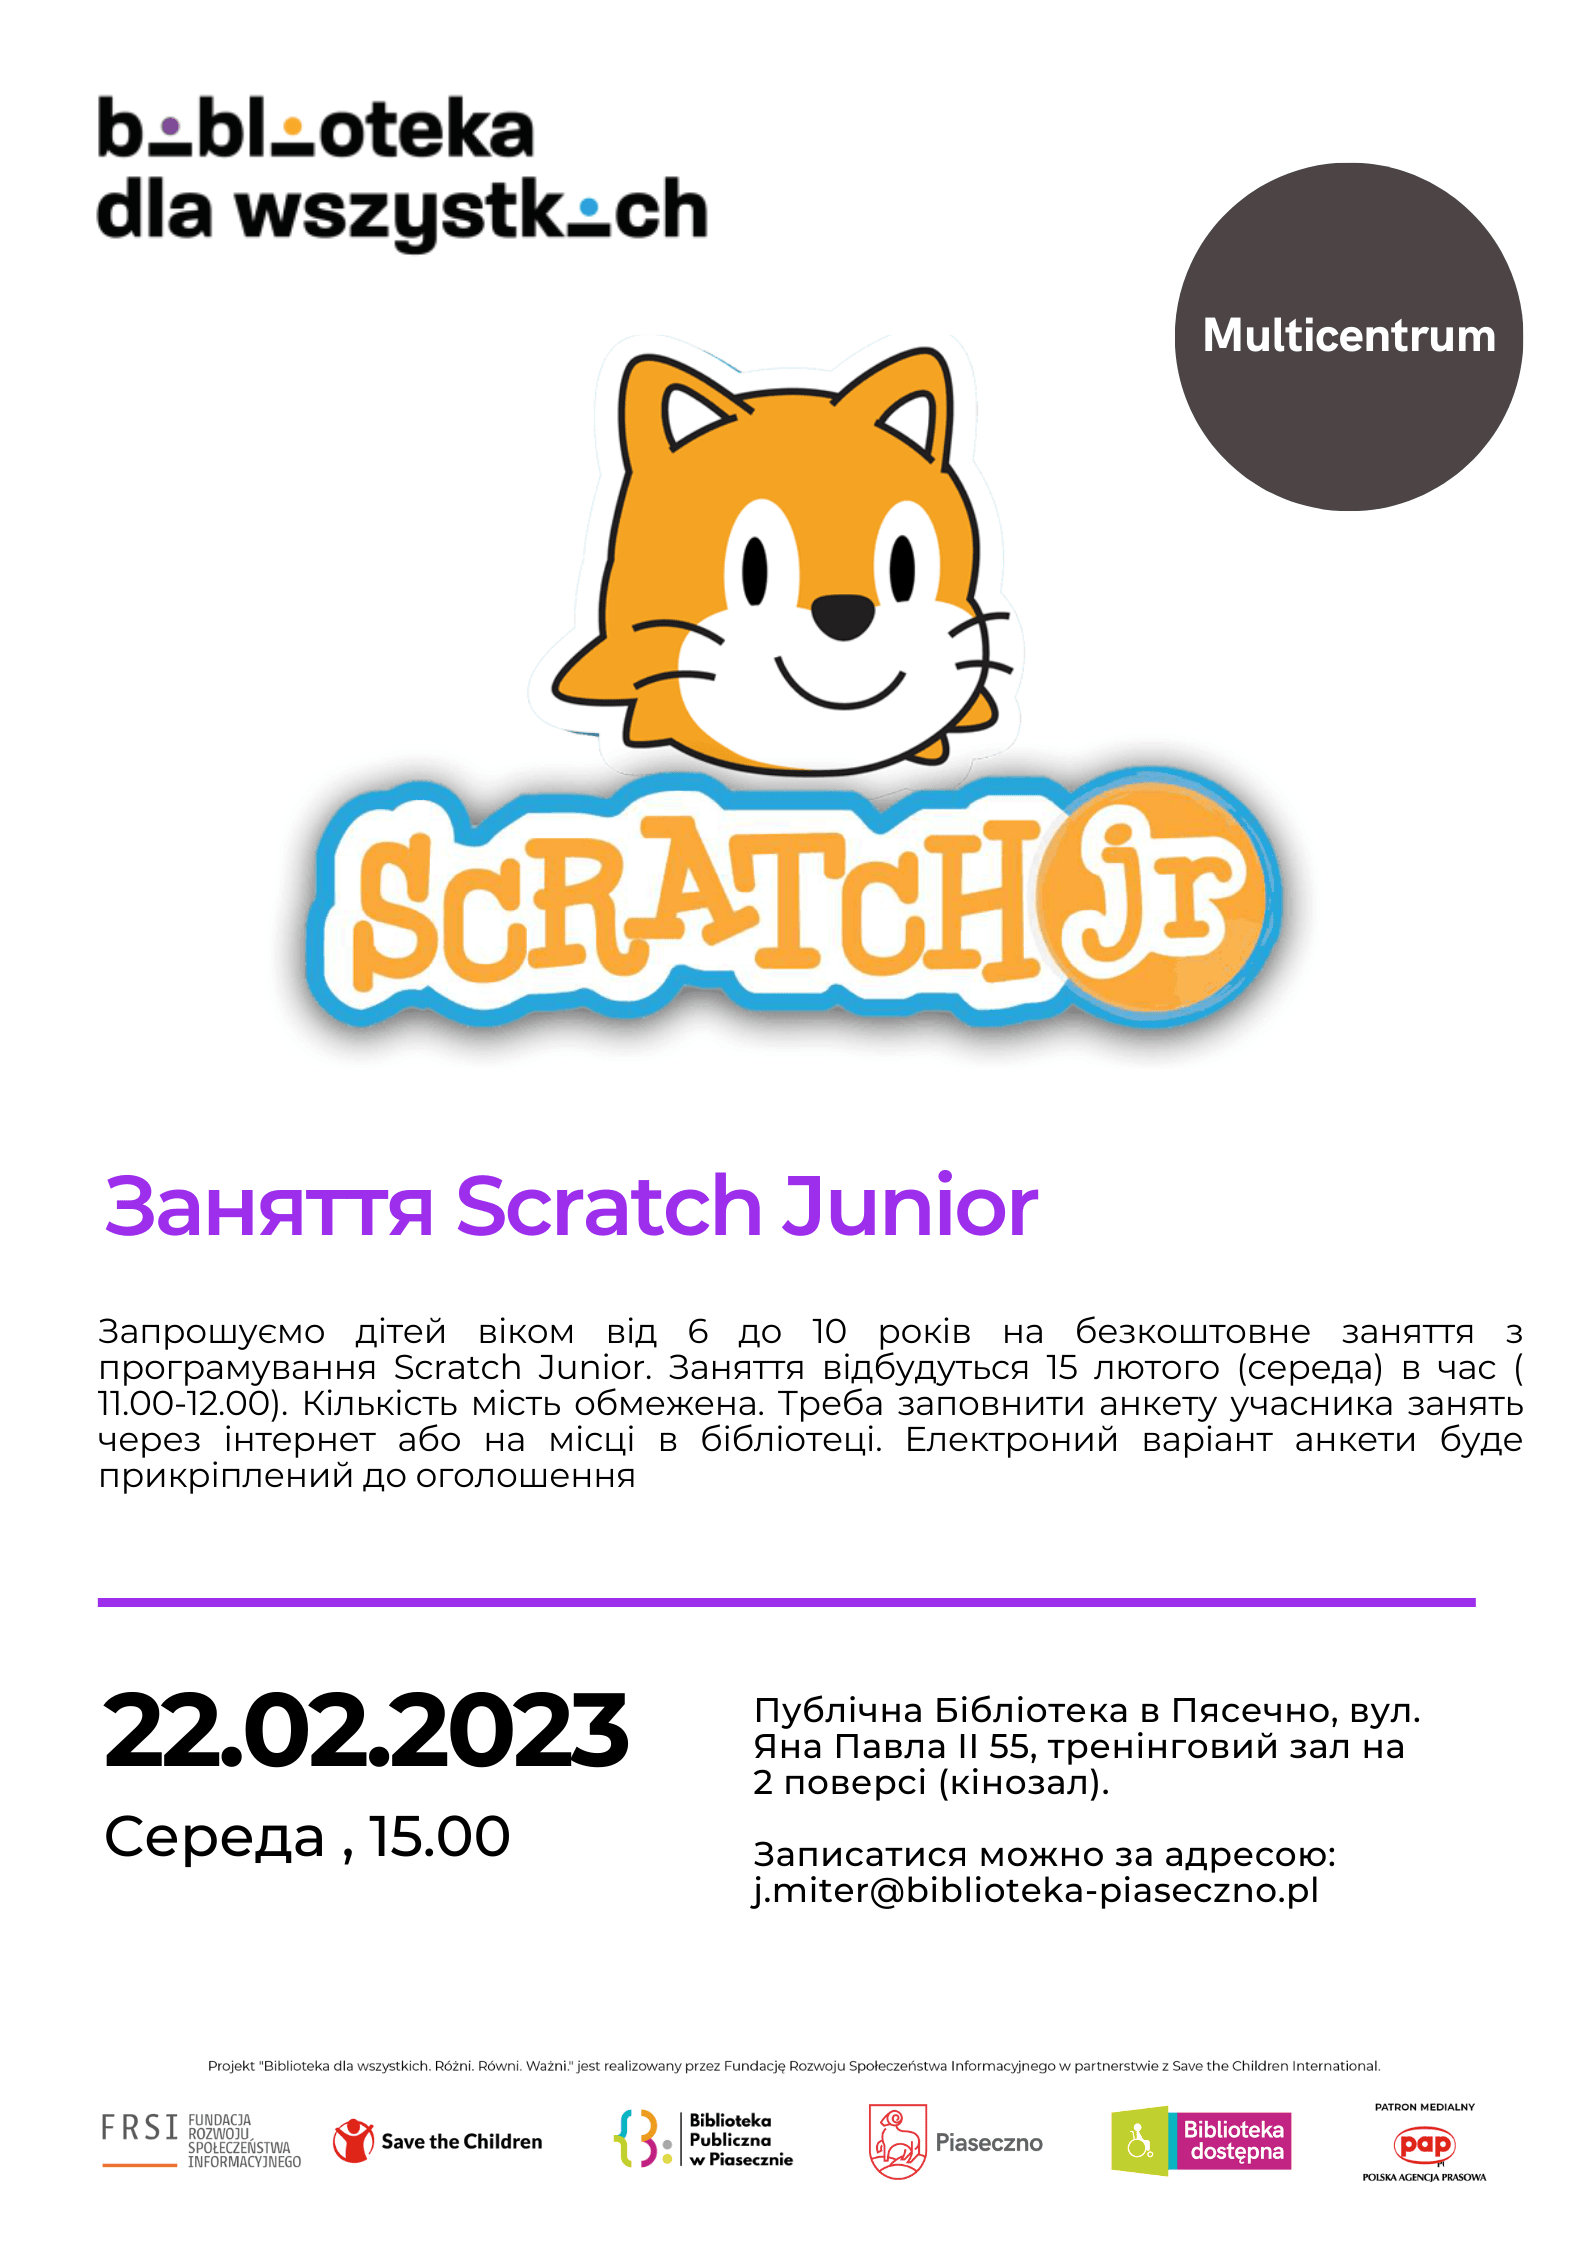 Zajęcia Scratch Junior